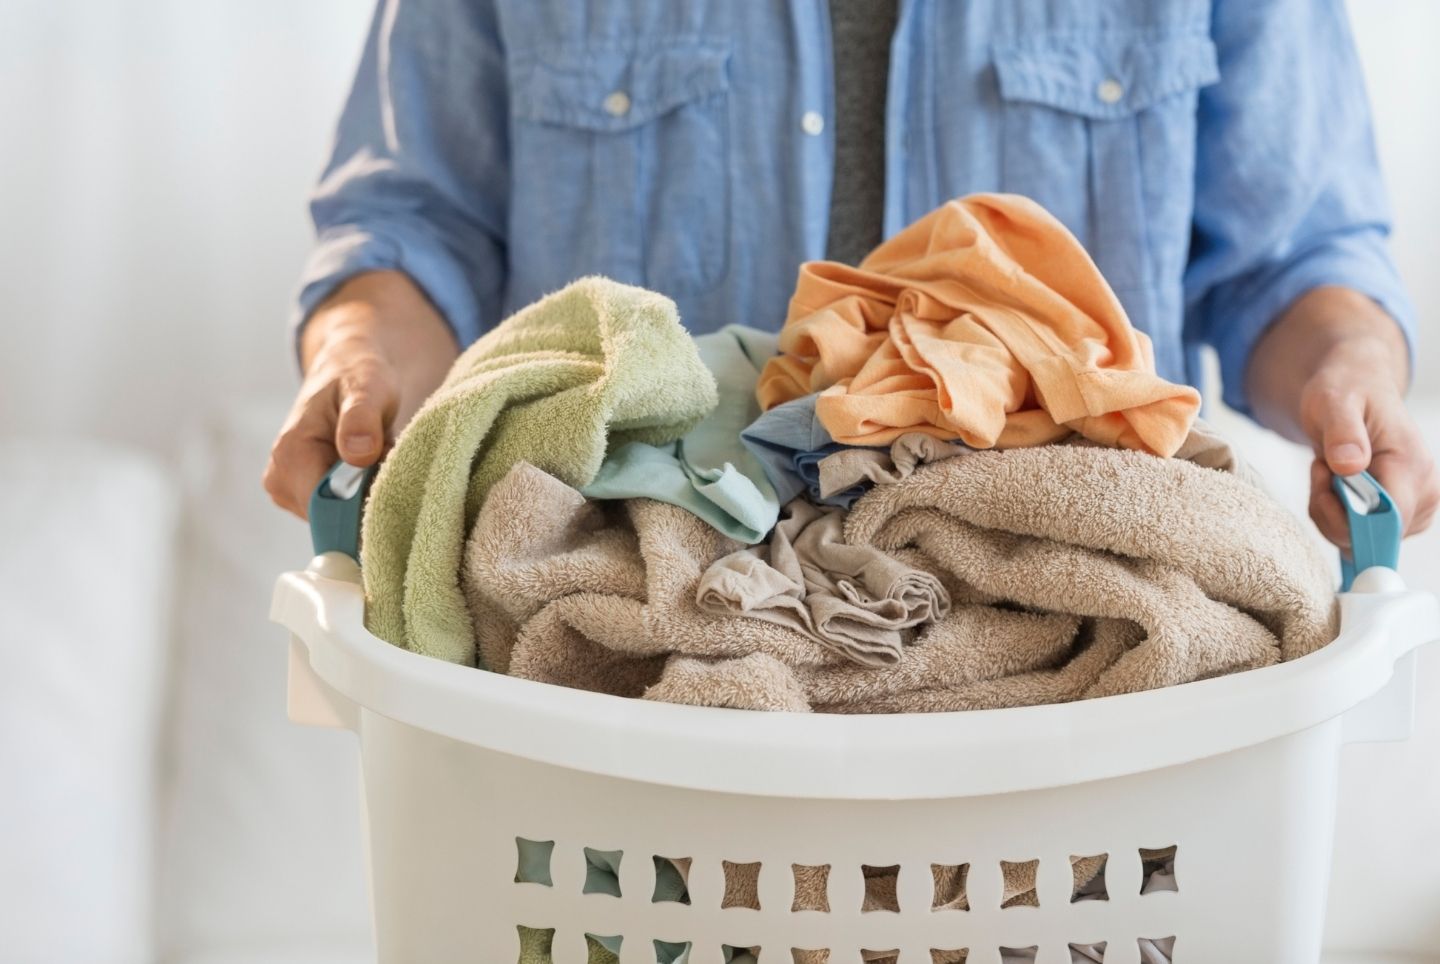 Tvätta utan tvättmedel: Allt du behöver veta